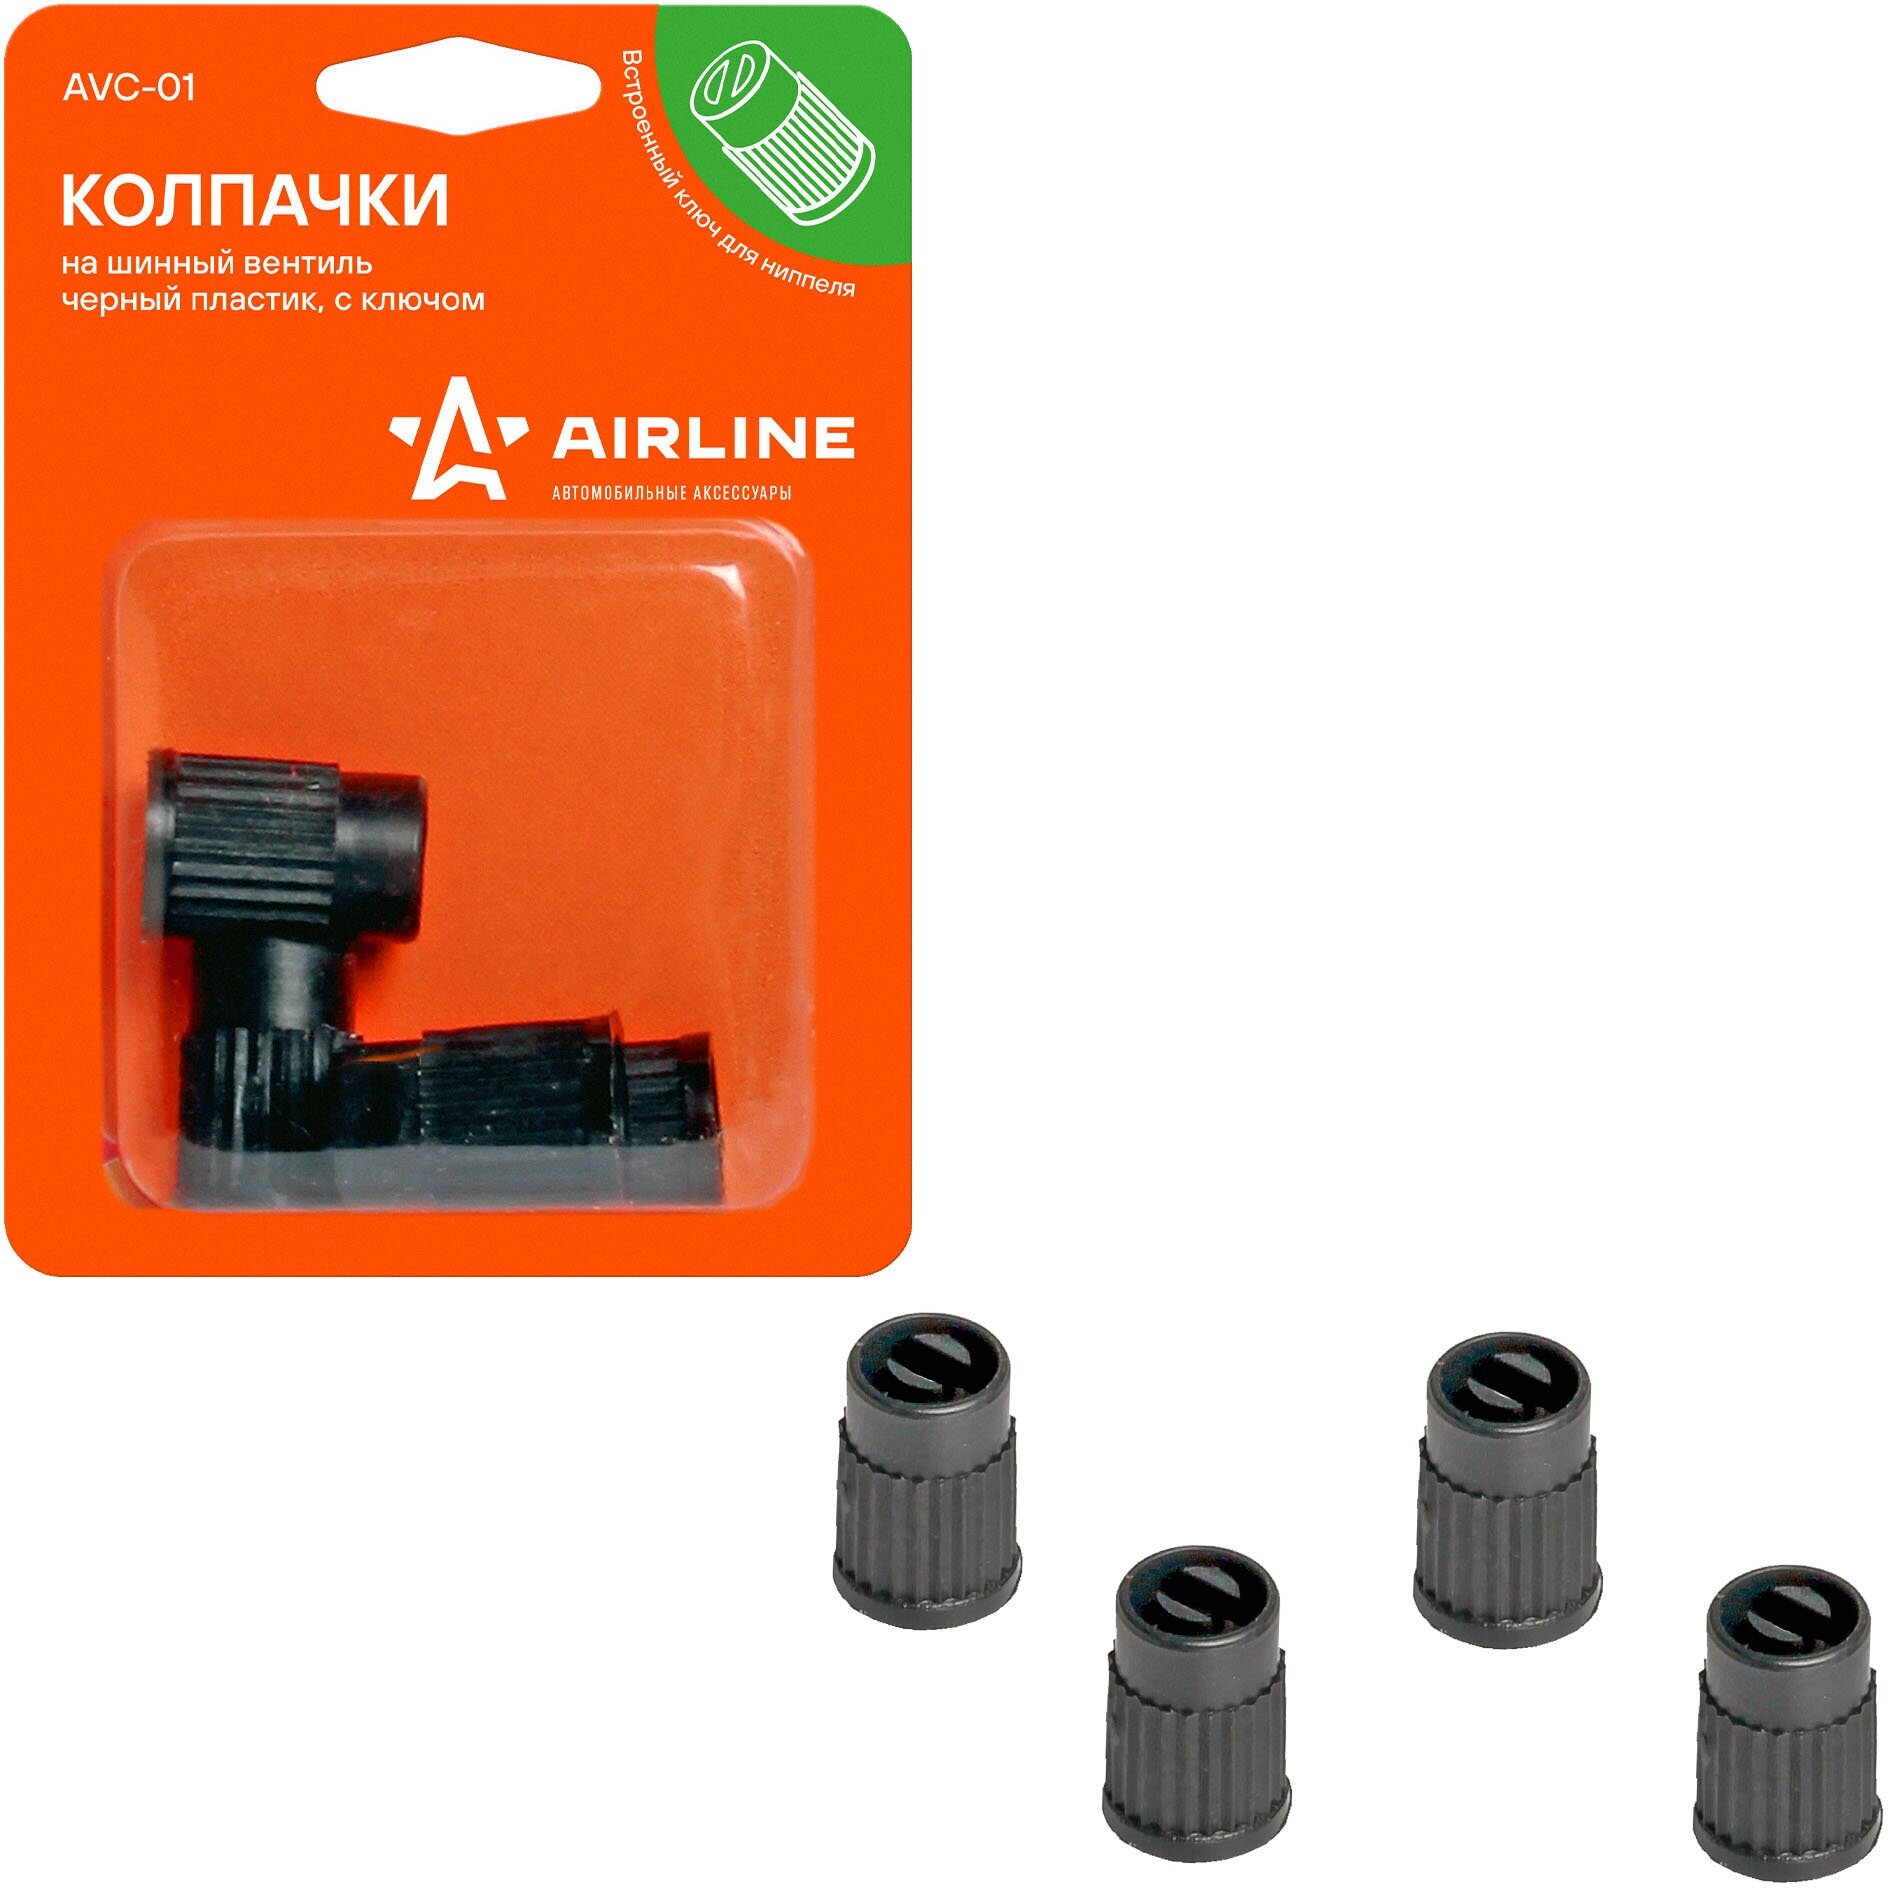 Колпачки на шинный вентиль с ключом, черные, пластик, 4 шт. AVC-01 AIRLINE